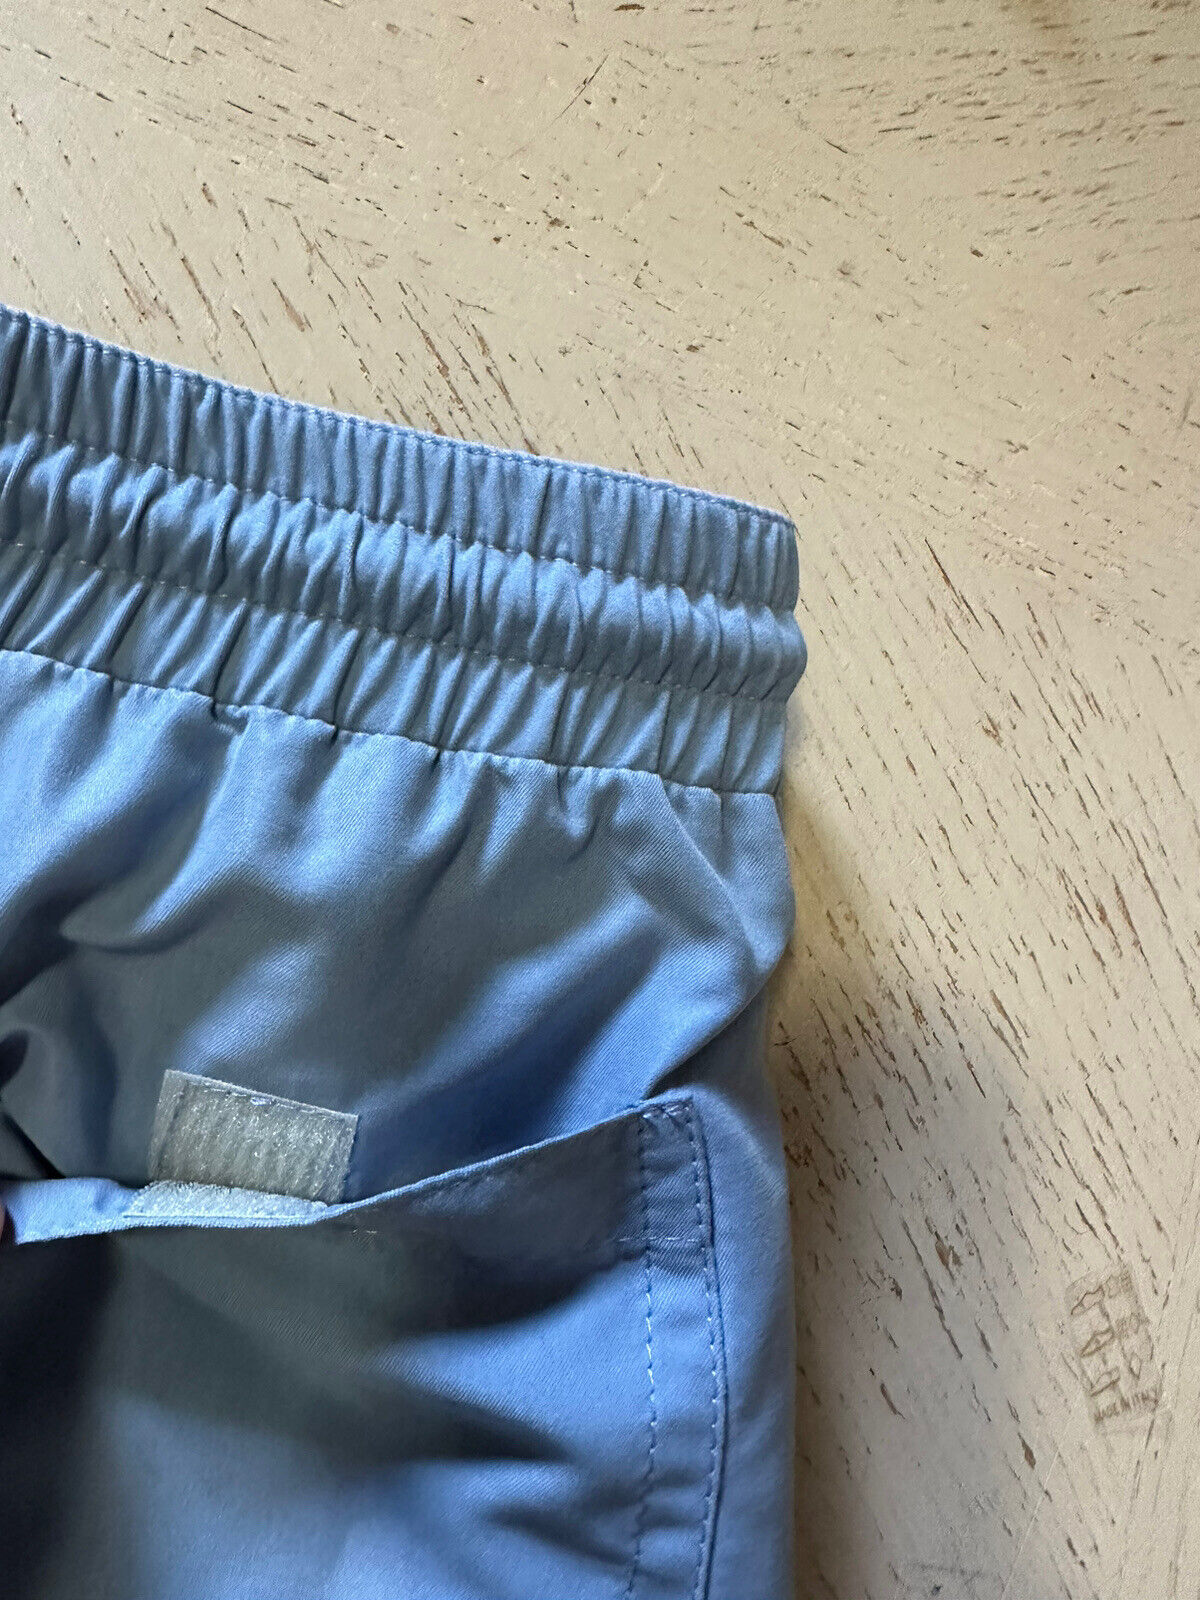 NWT $550 Brunello Cucinelli Мужские шорты для плавания на шнурке, цвет синий, XL